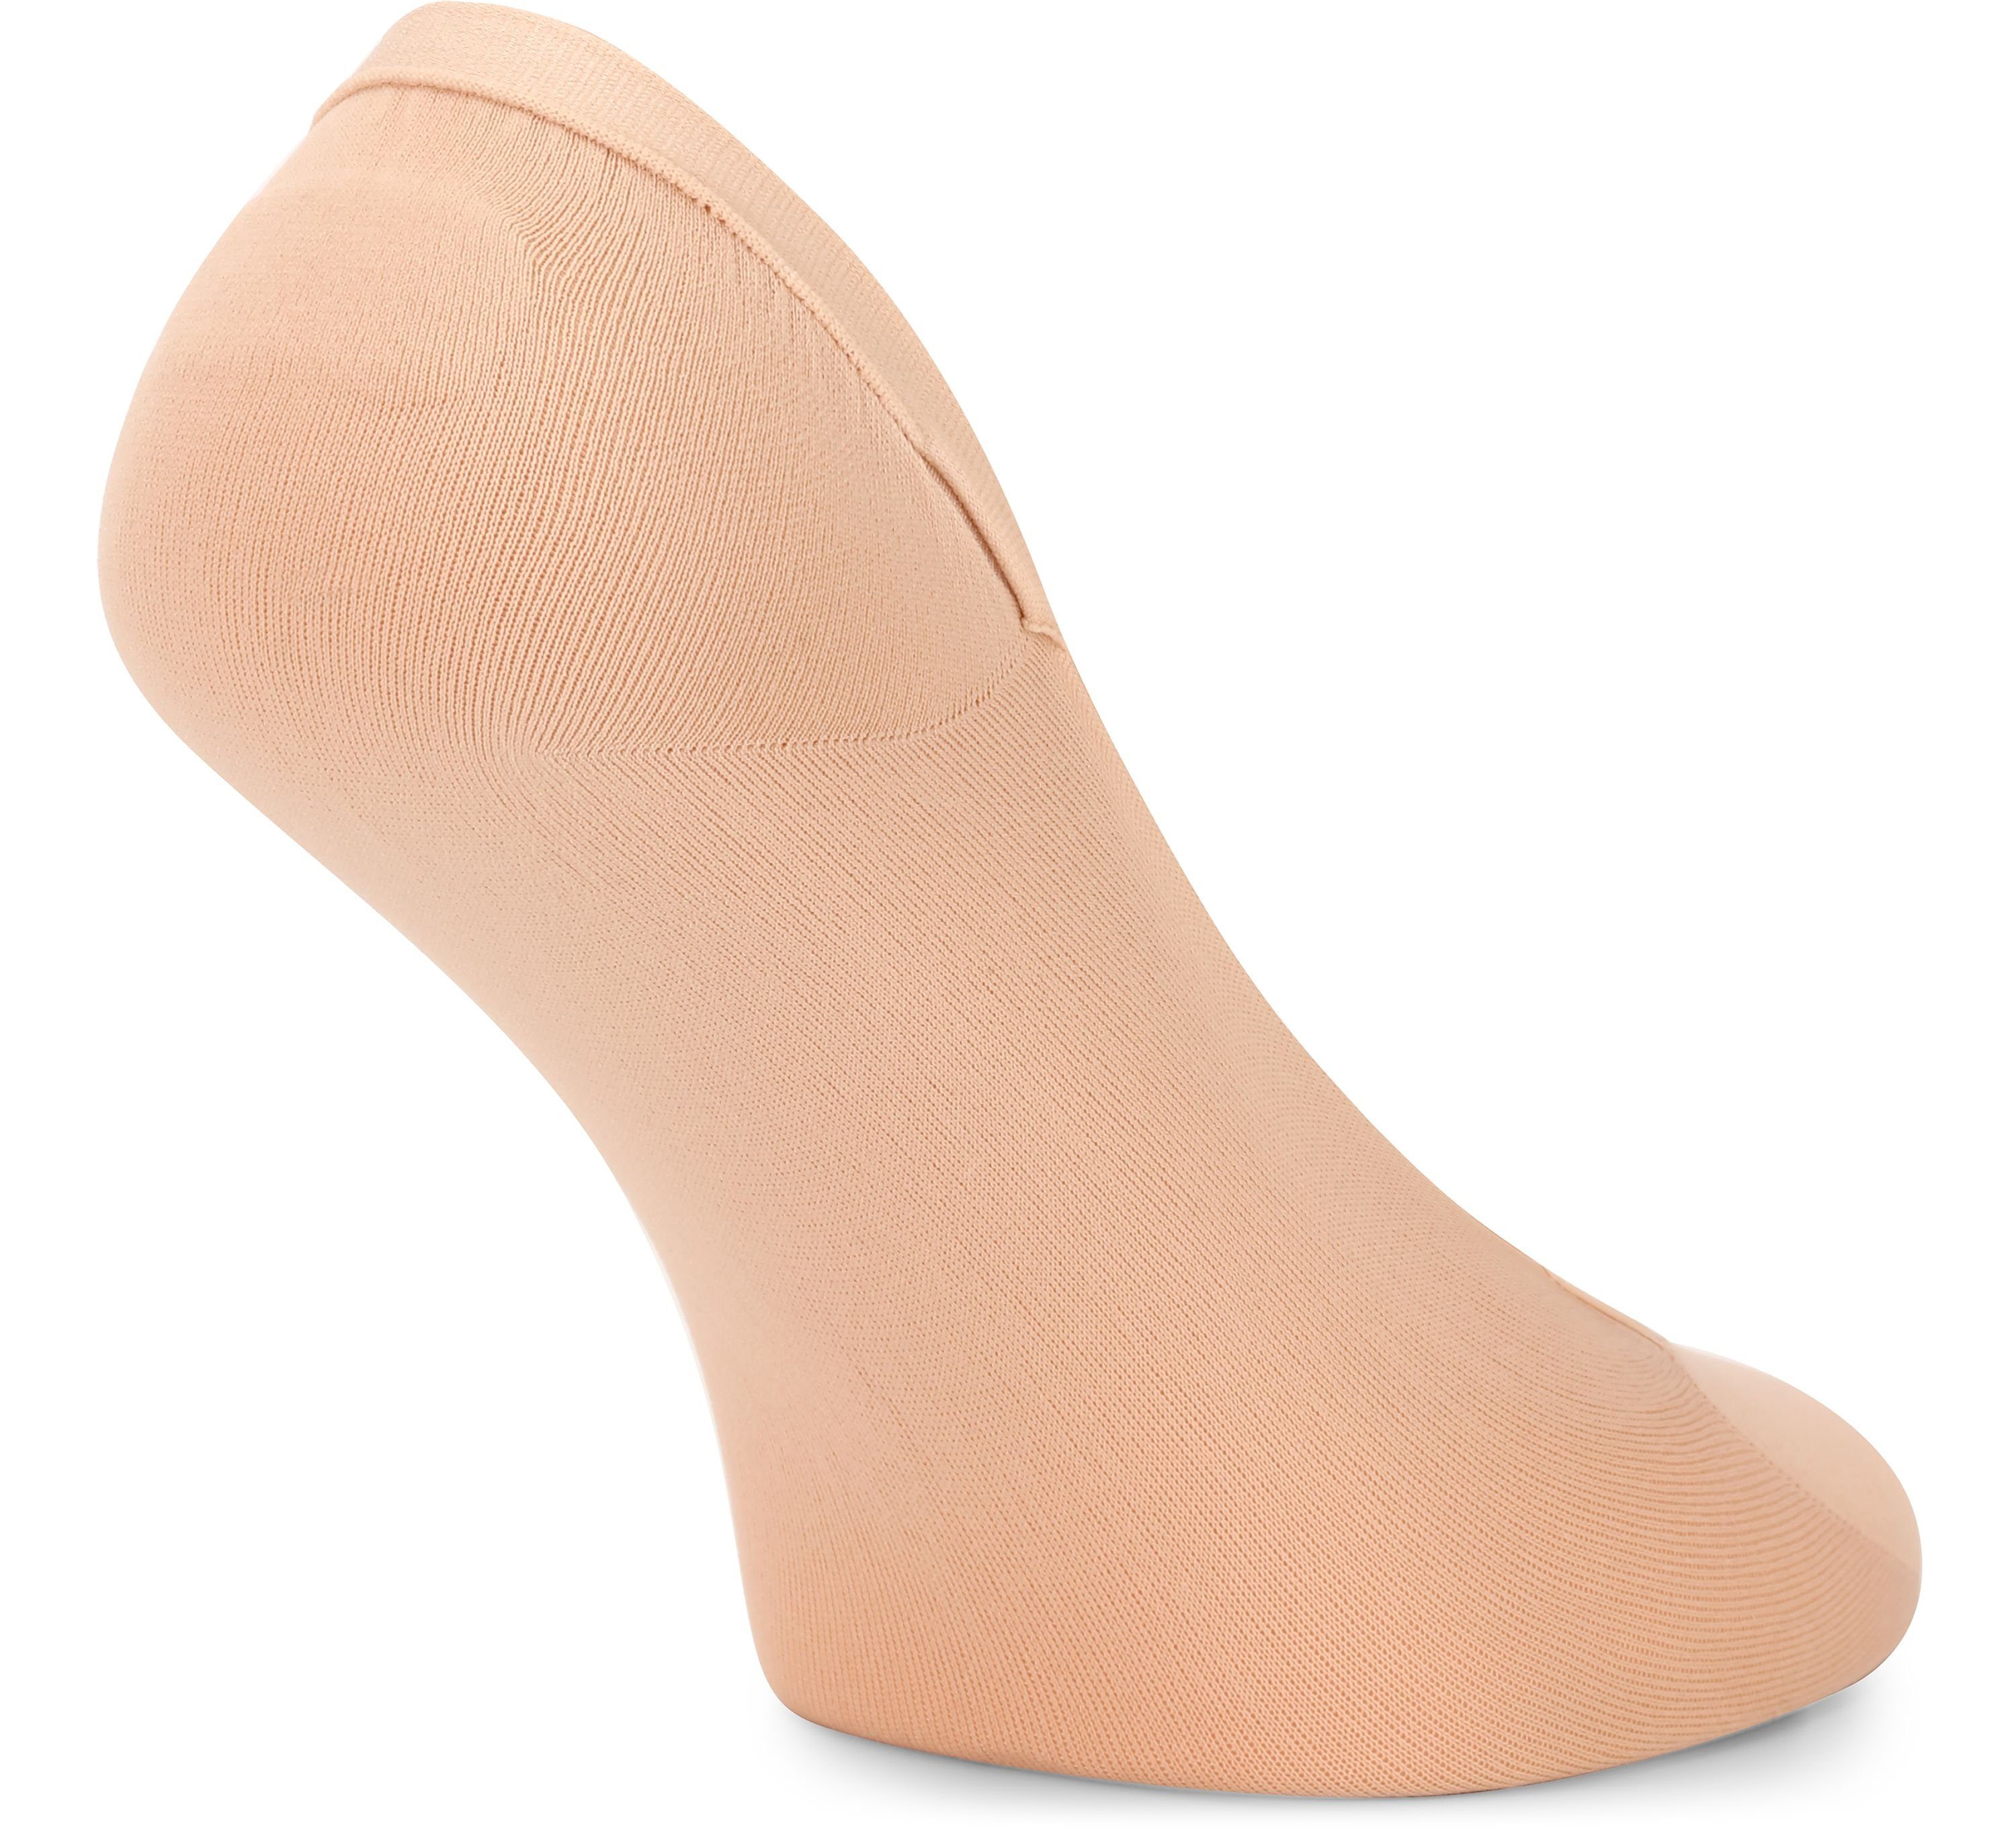 Socken Merry Halbsocken - MSGI046 Atmungsaktive Beige Füßlinge Socken Damen Style Sneaker 2Pack